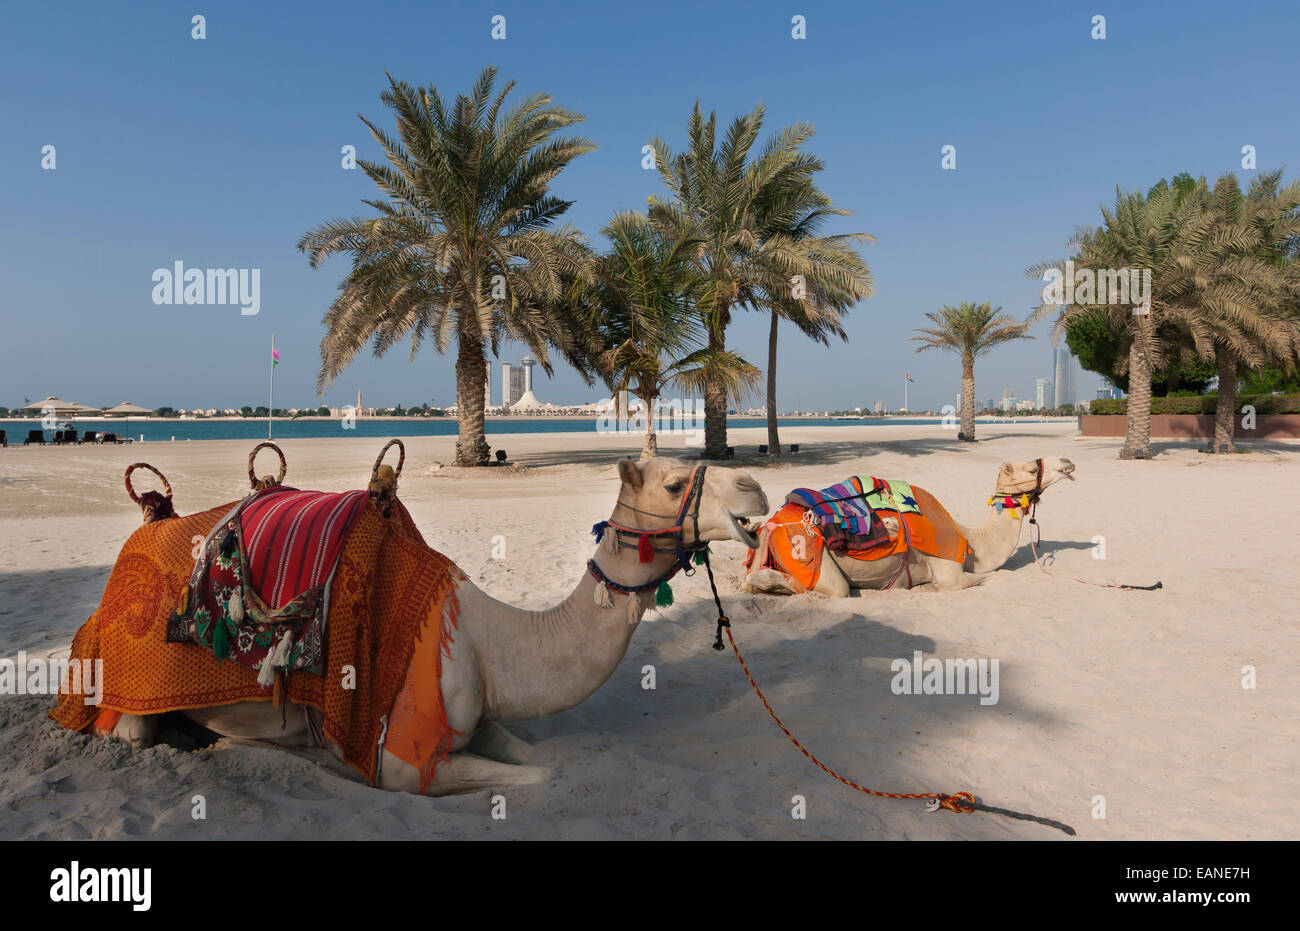 Abu Dhabi, United Arab Emirates. Camels on beach. Stock Photo